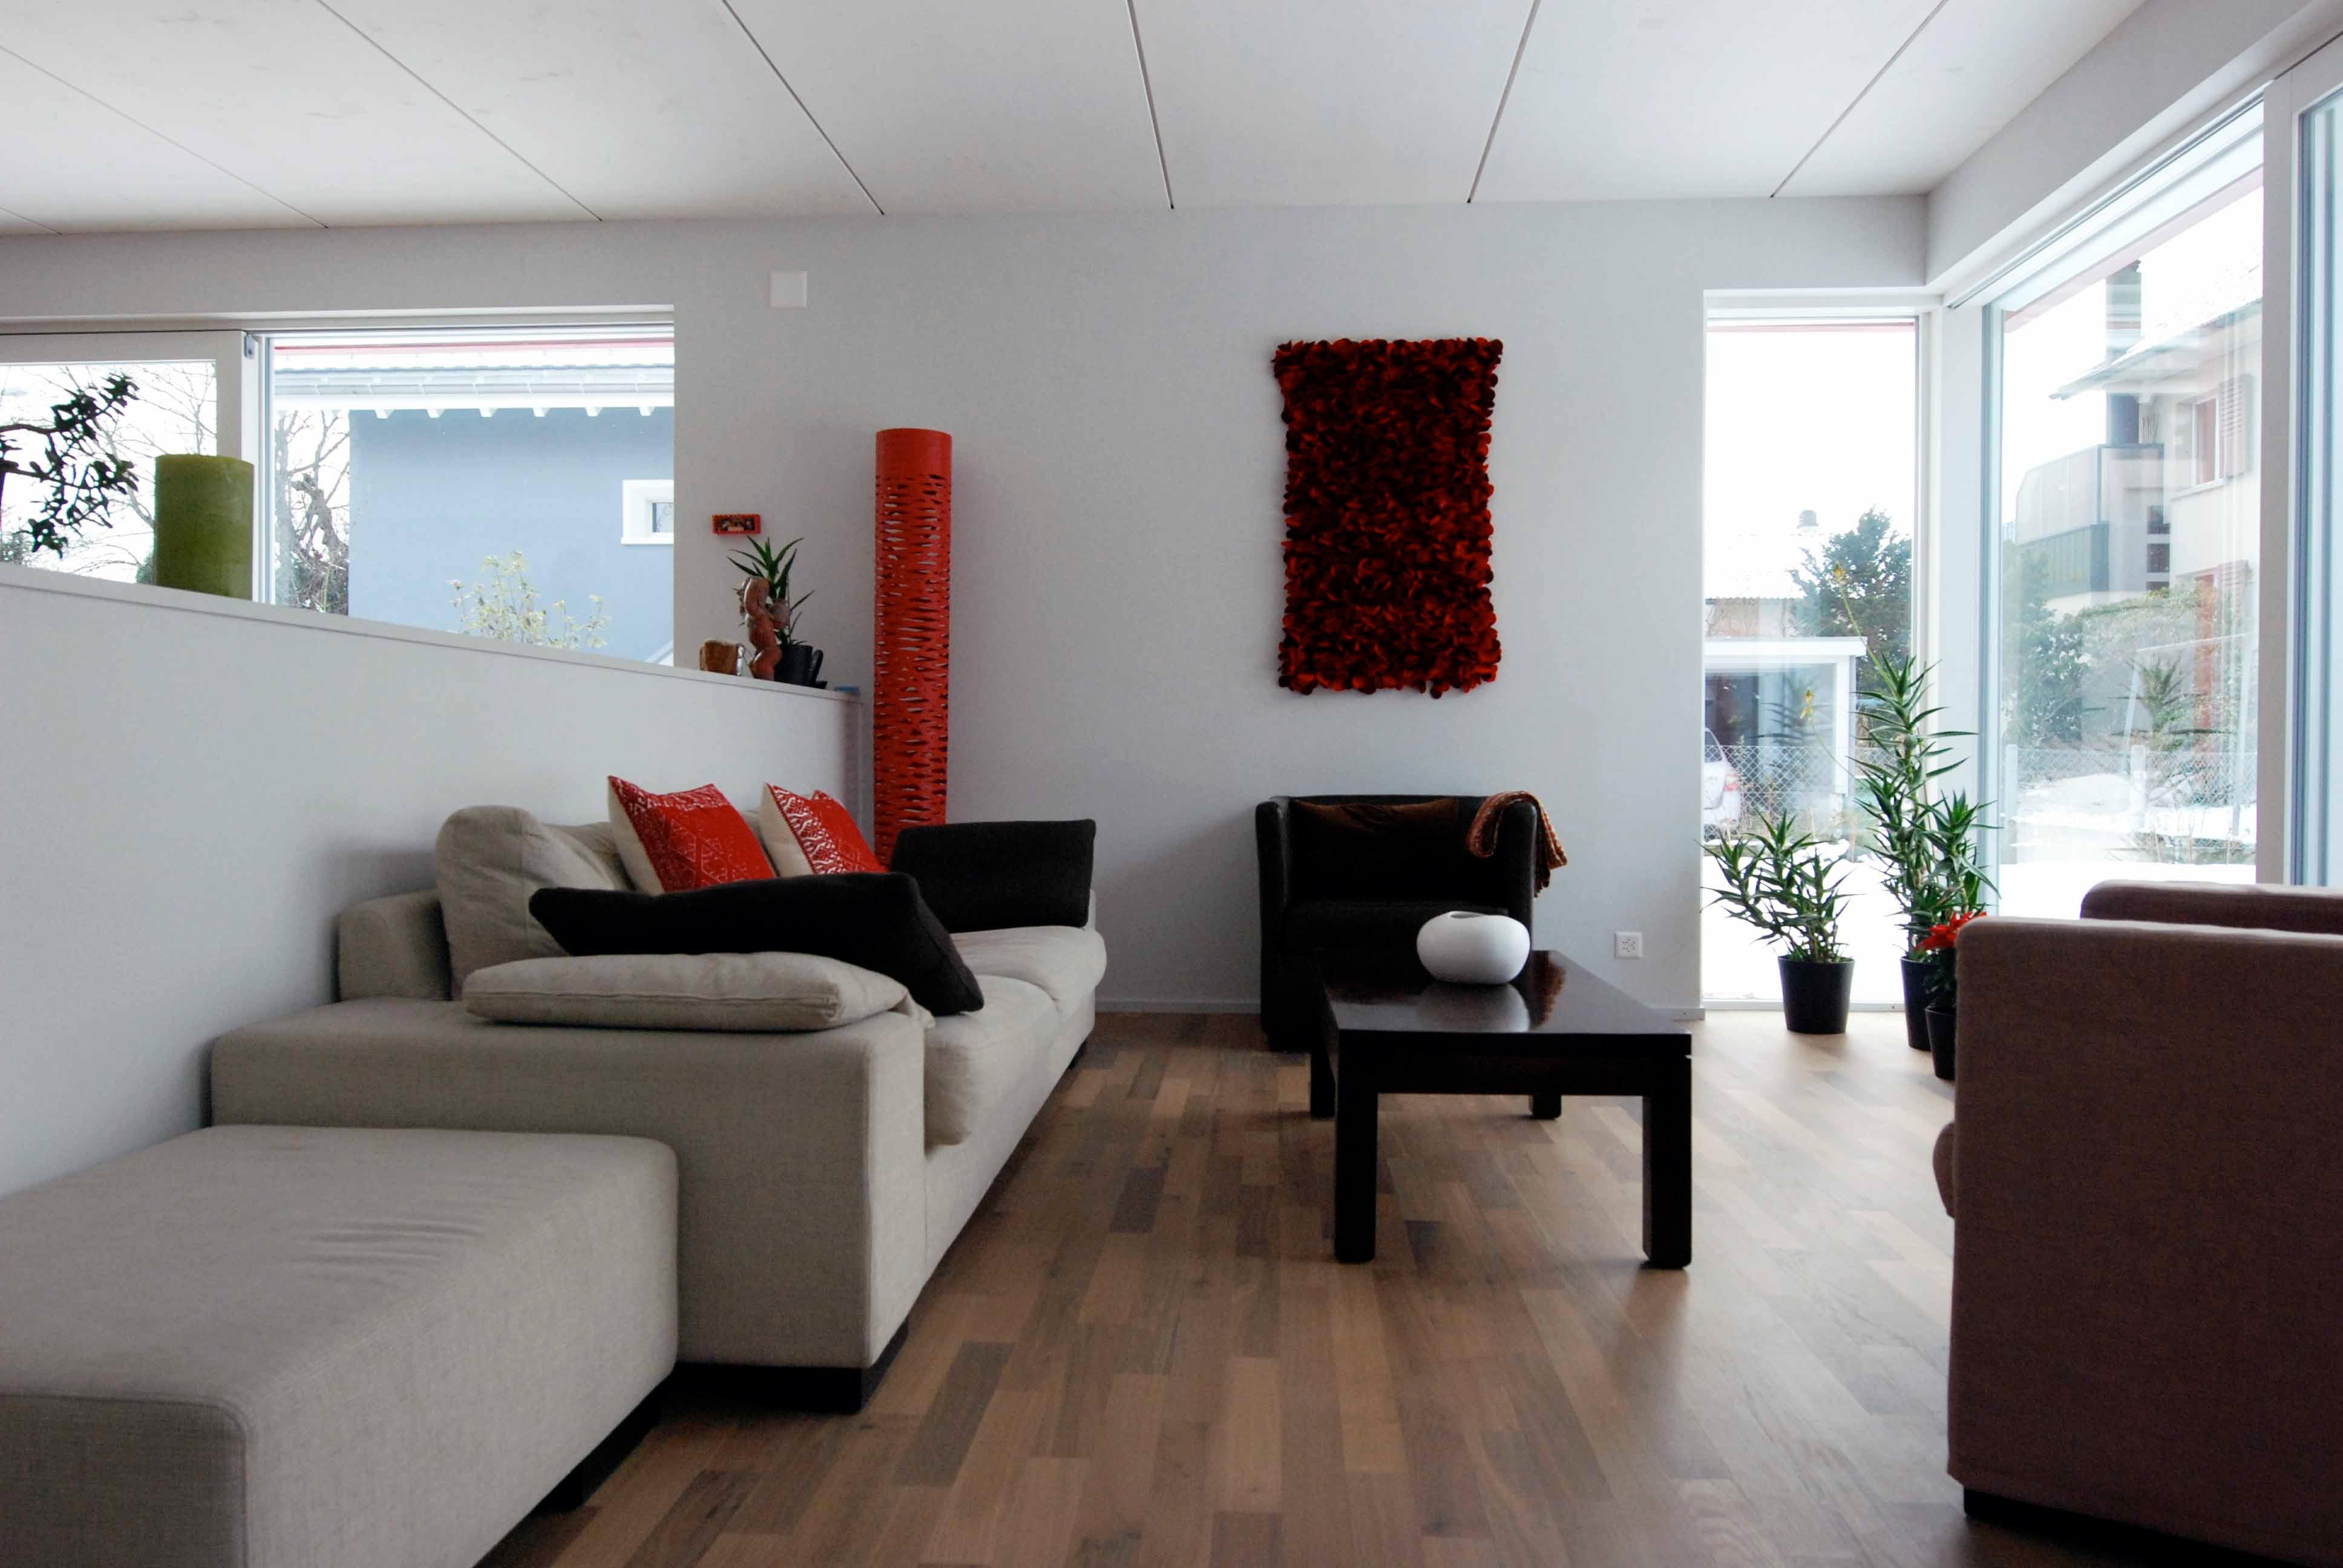  Architektur-Reportage Thun roter Kubus: Wohnbereich mit Sofa und Kunst